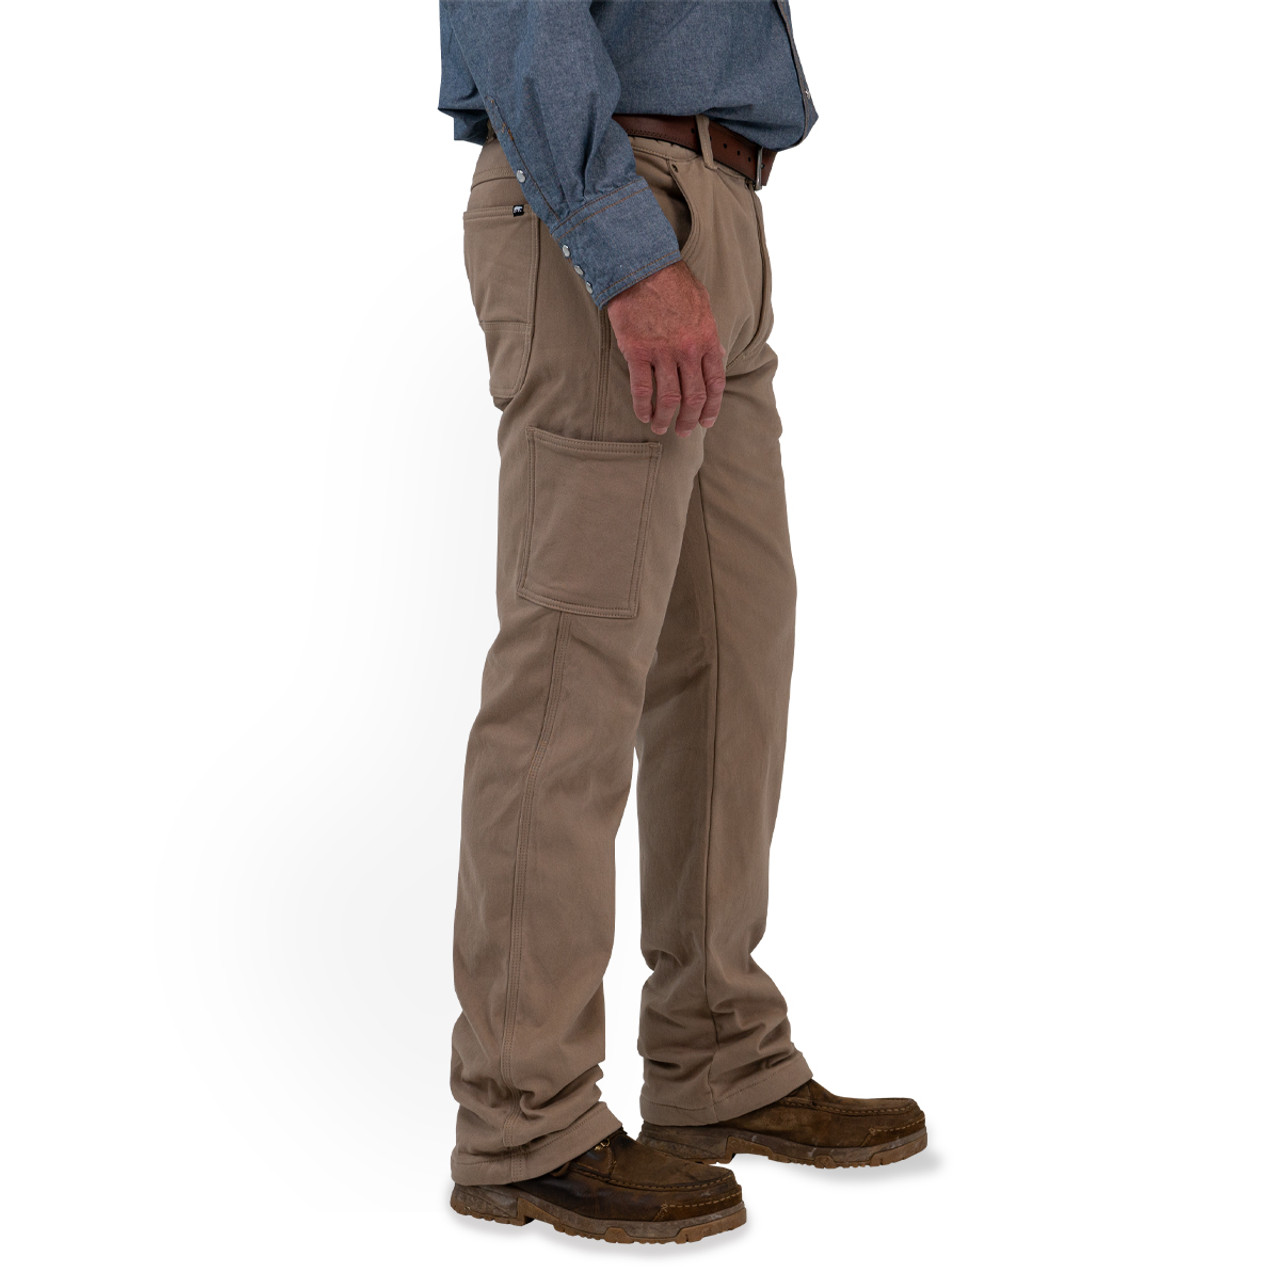 Men's Fleece Lined Shield Flex Pant (Size: 32x34, Color: Graphite)